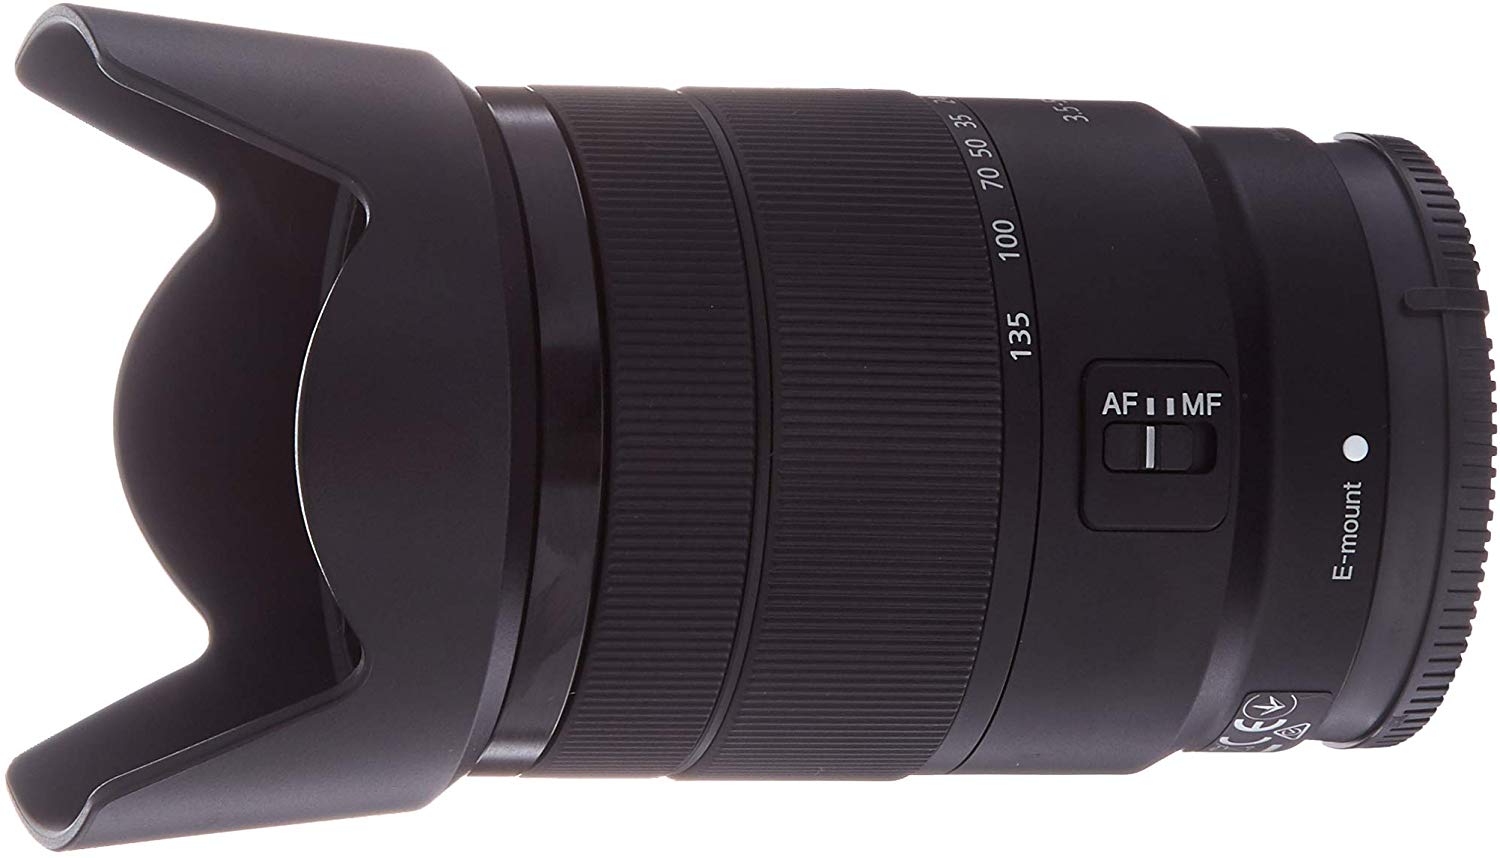 Sony E 18-135 mm F3.5-5.6 OSS standard zoom lens